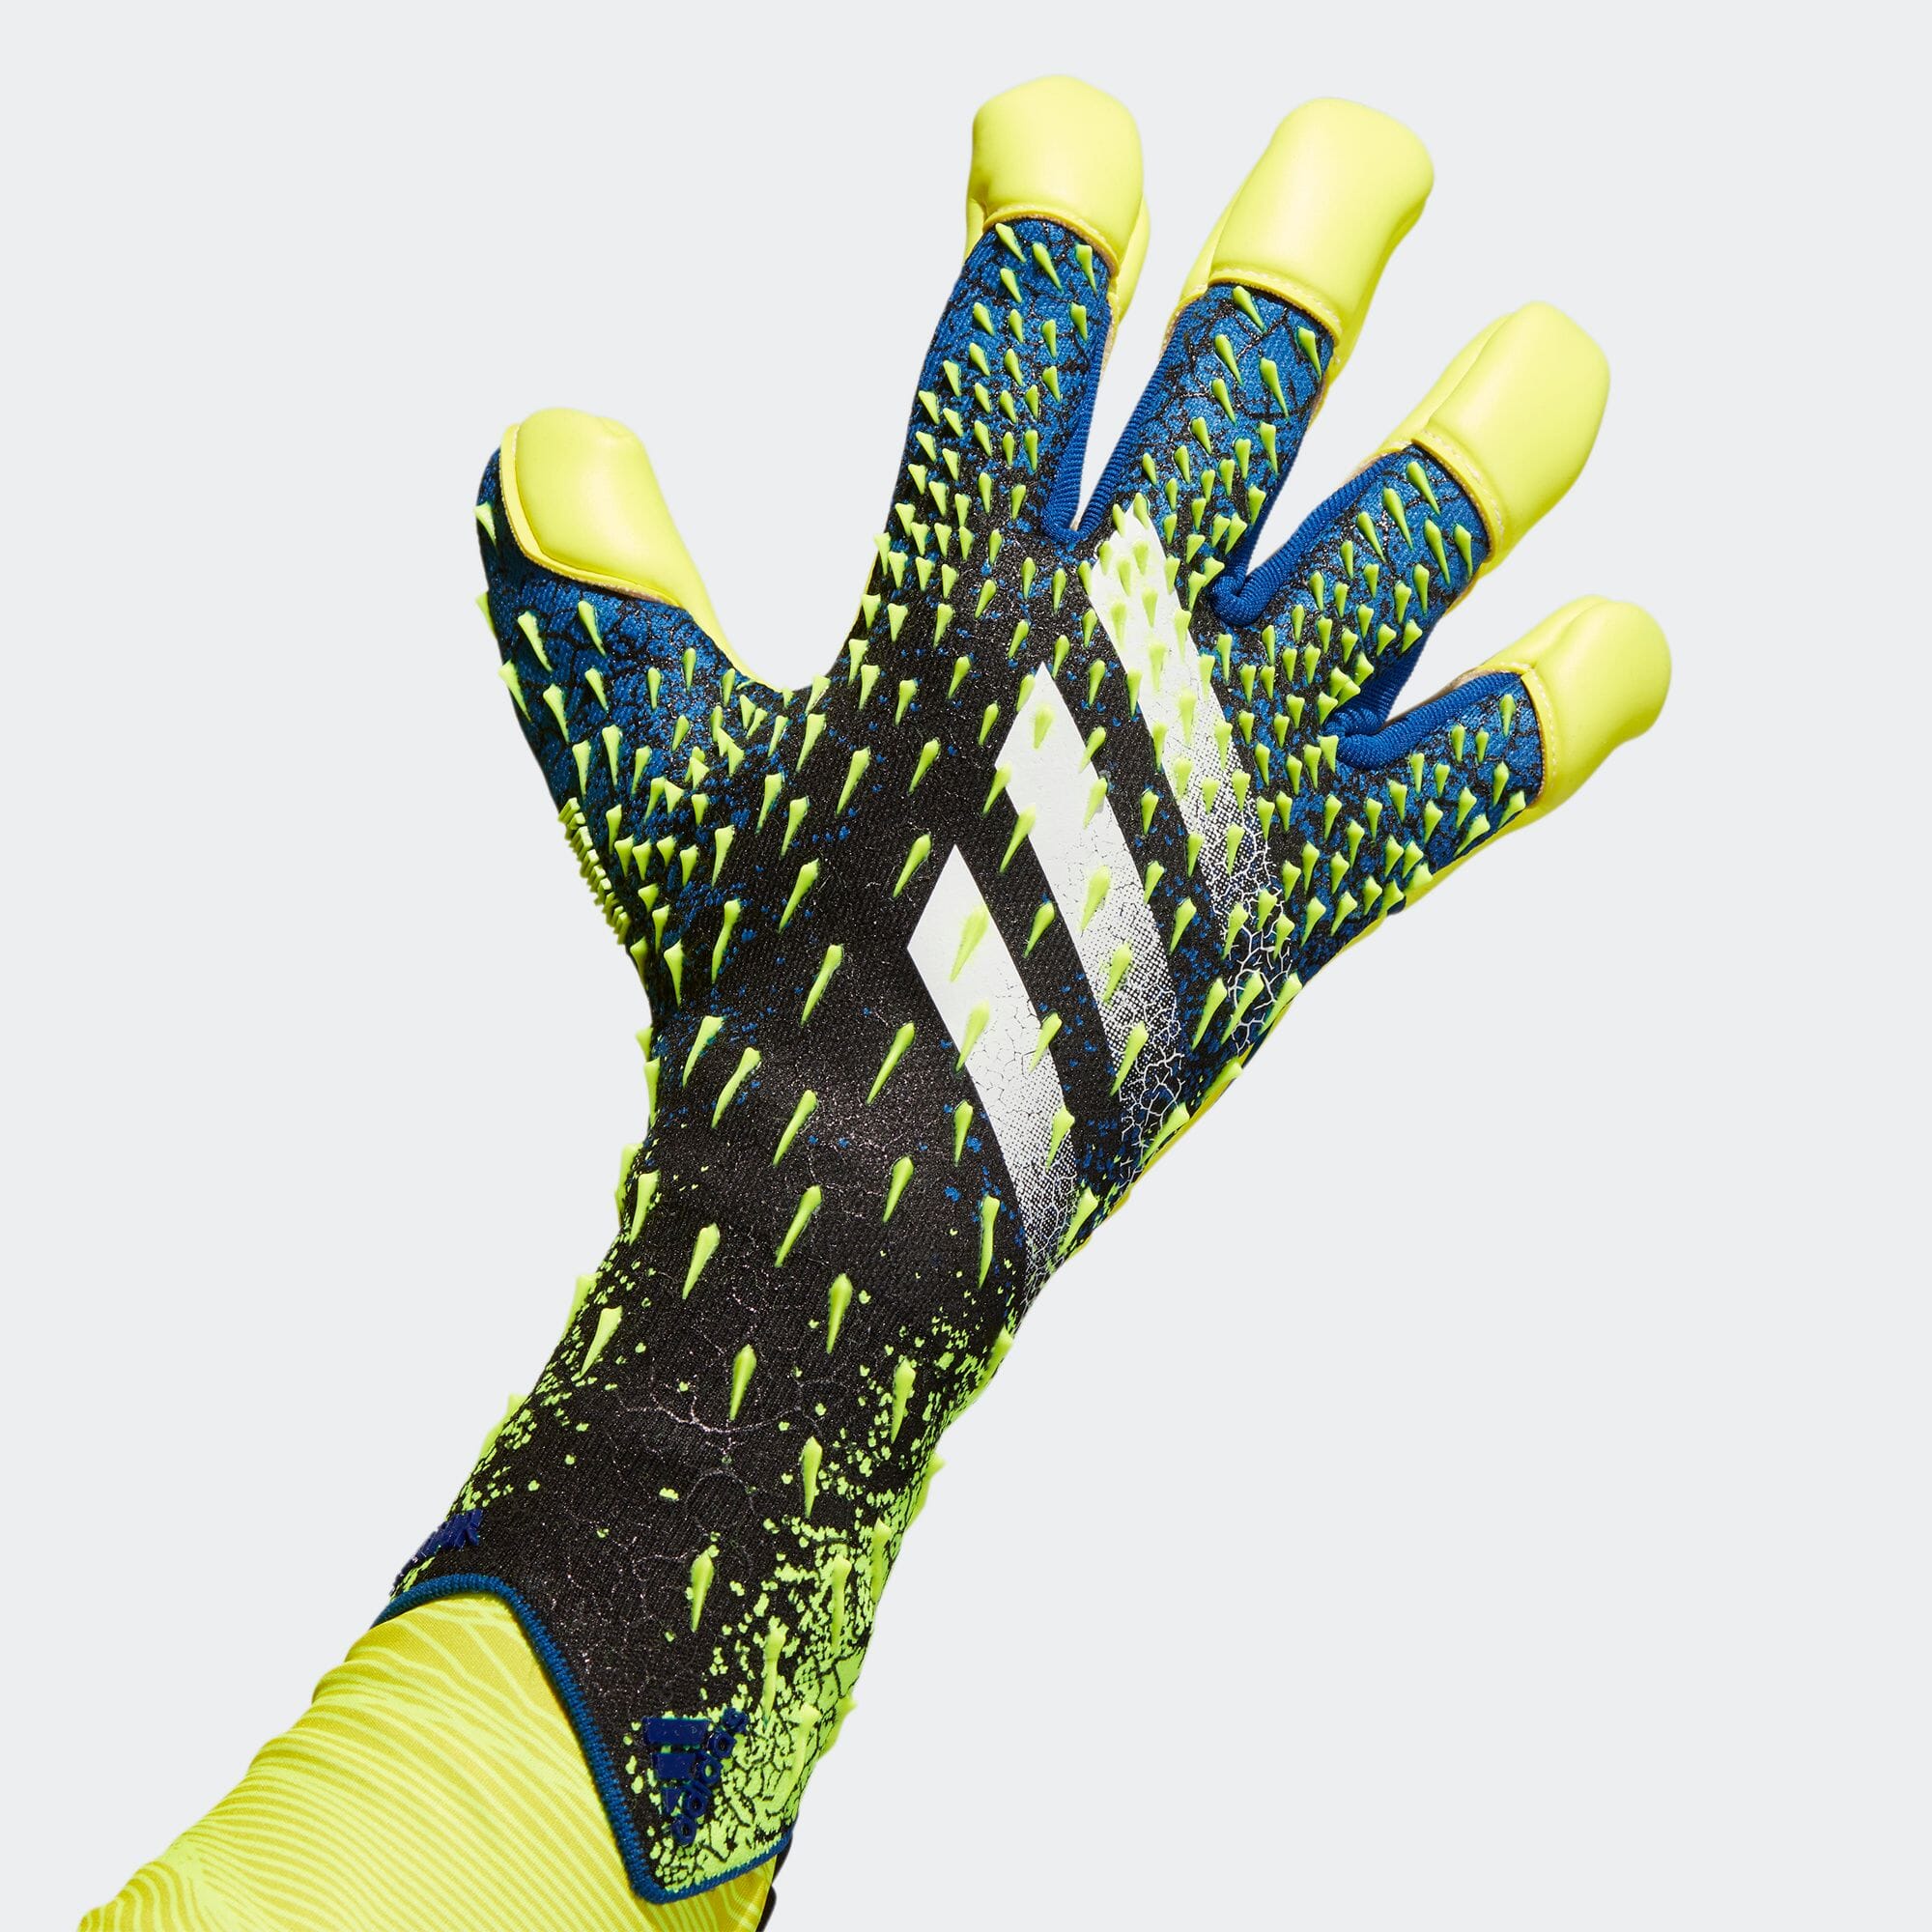 アディダス公式通販 プレデター プロ ハイブリッド ゴールキーパーグローブ Predator Pro Hybrid Goalkeeper Gloves Gk3529 Gk7477 サッカー キーパーグローブ Adidas オンラインショップ